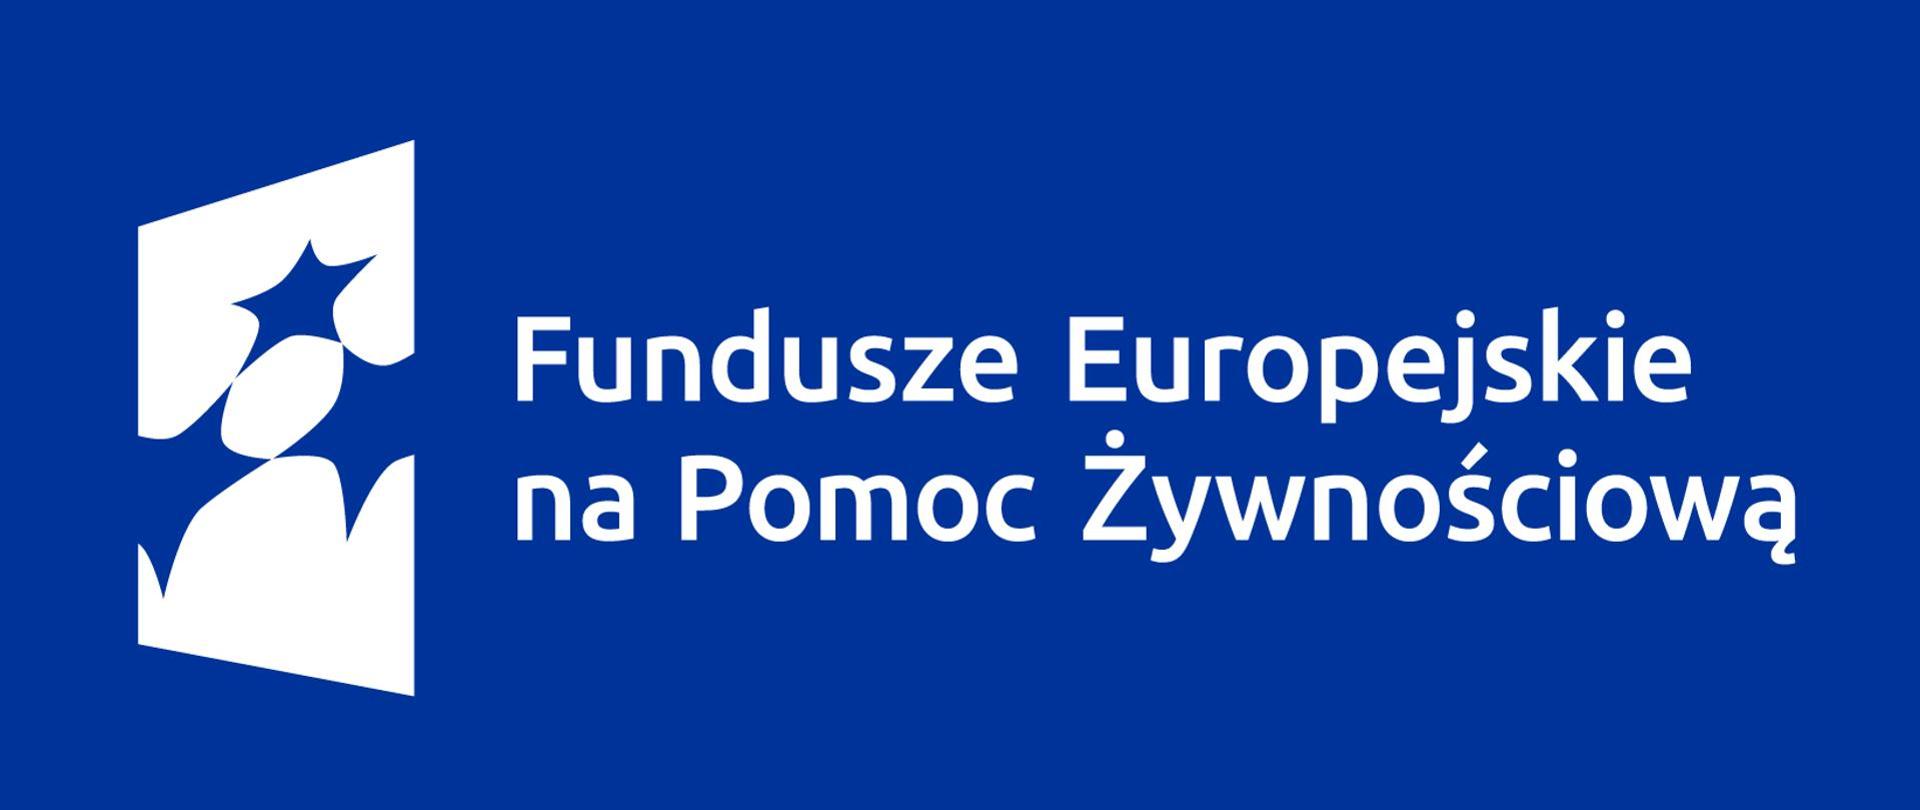 FUNDUSZE_EUROPEJSKIE_NA_POMOC_ZYWNOŚCIOWĄ_2021-2027